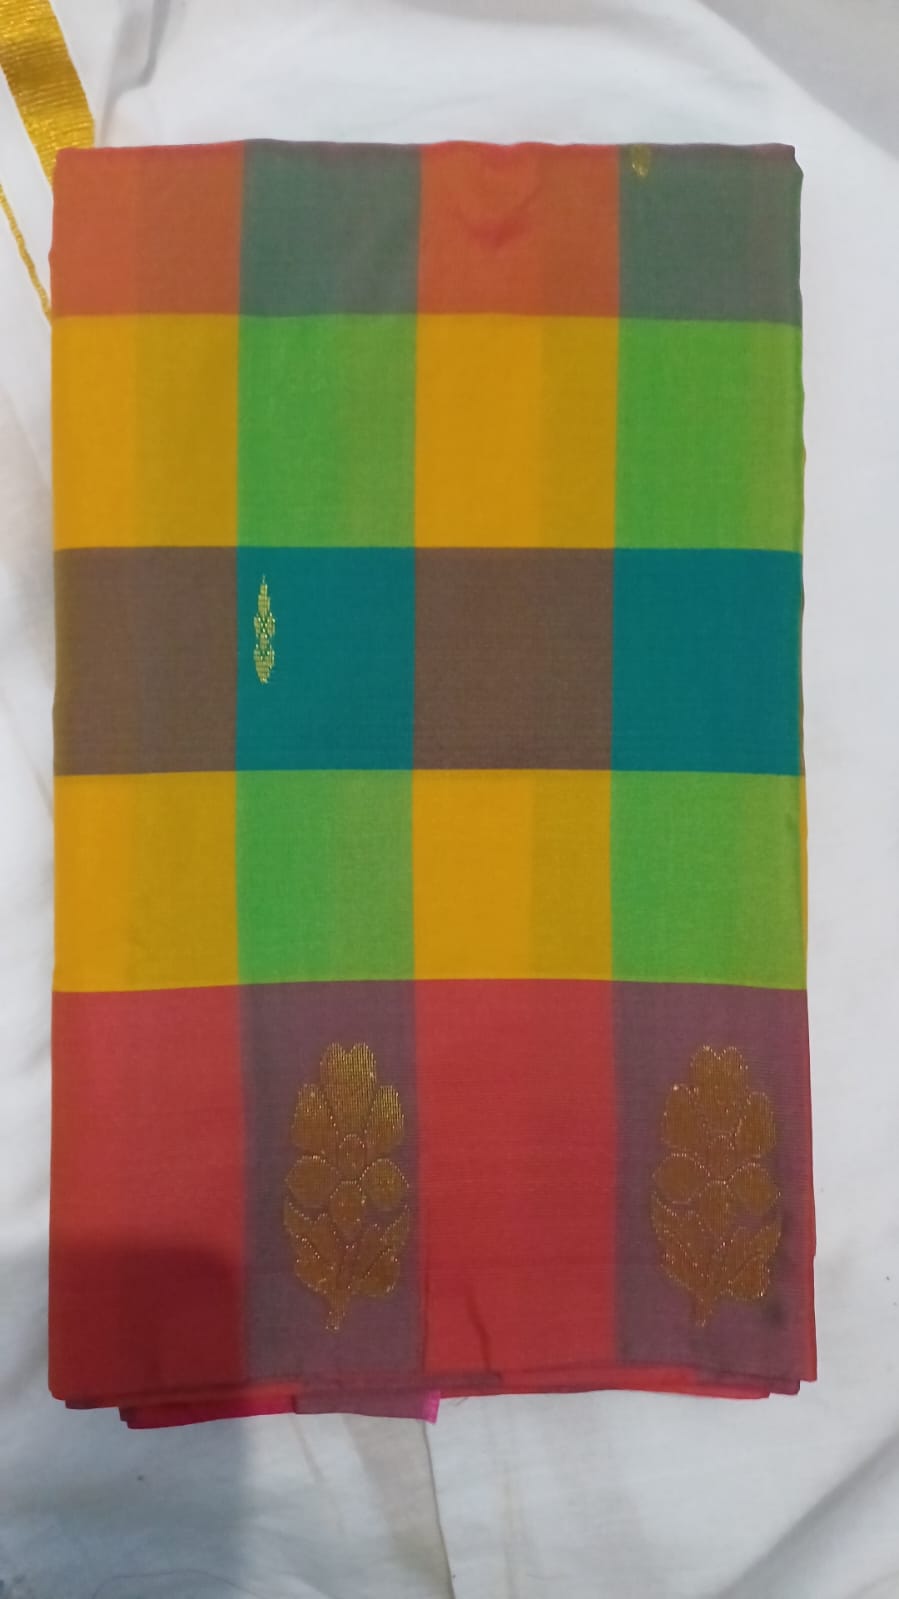 Arani kovai paalum pazhamum multi color checked pattu saree